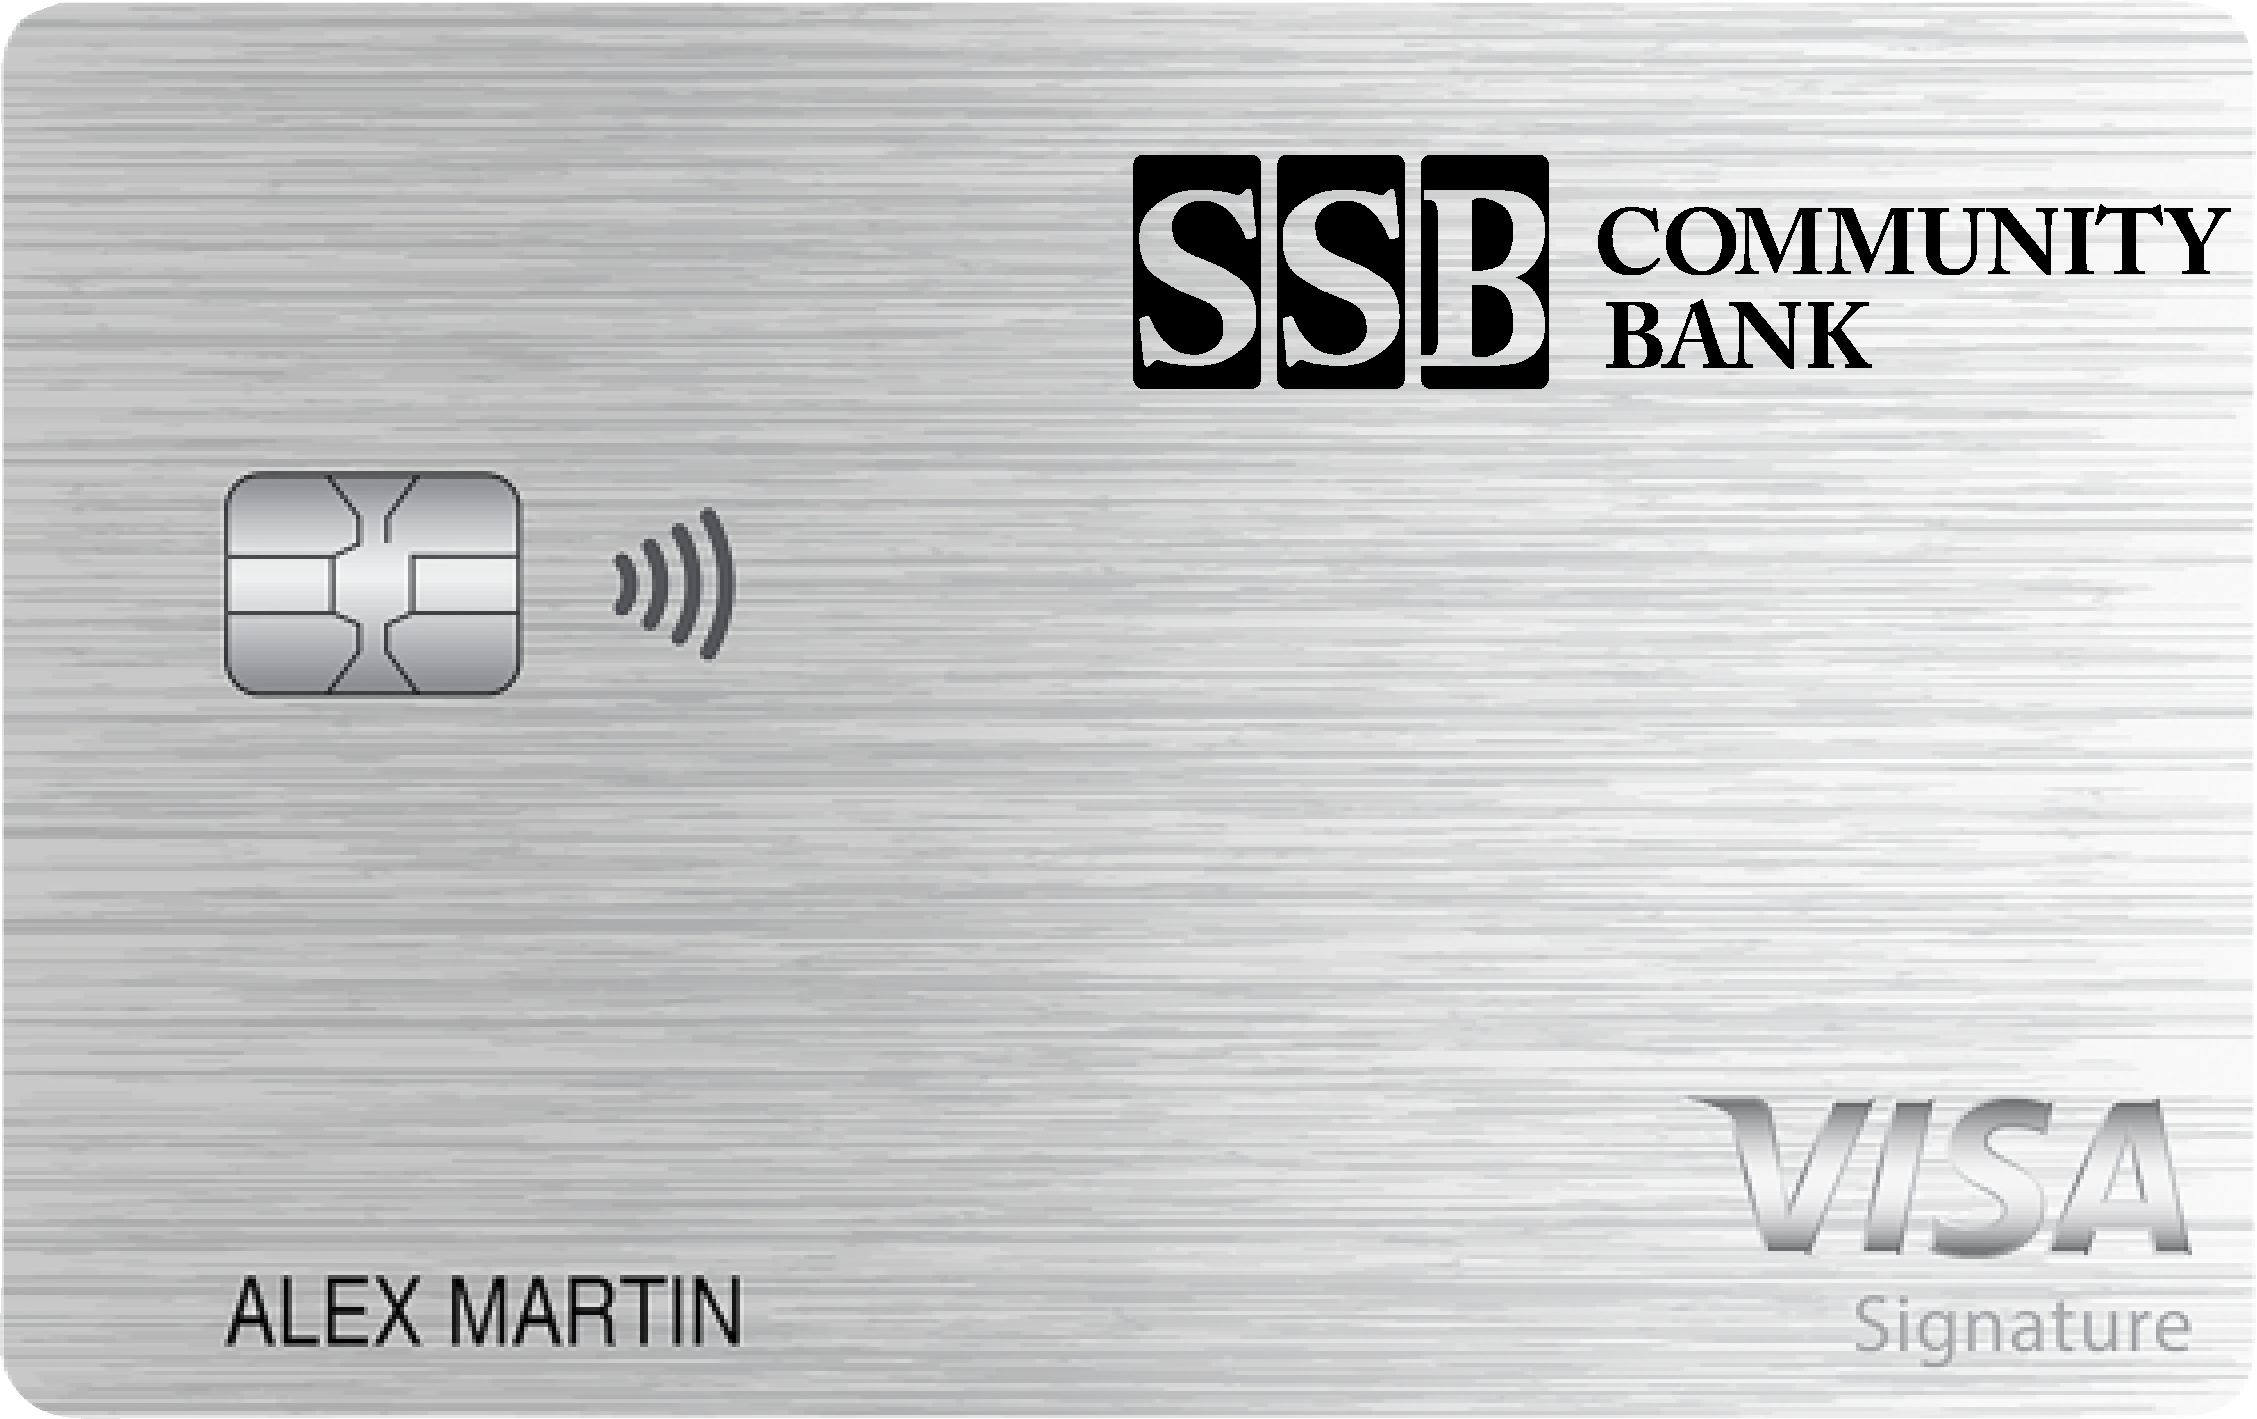 SSB Community Bank Travel Rewards+ Card